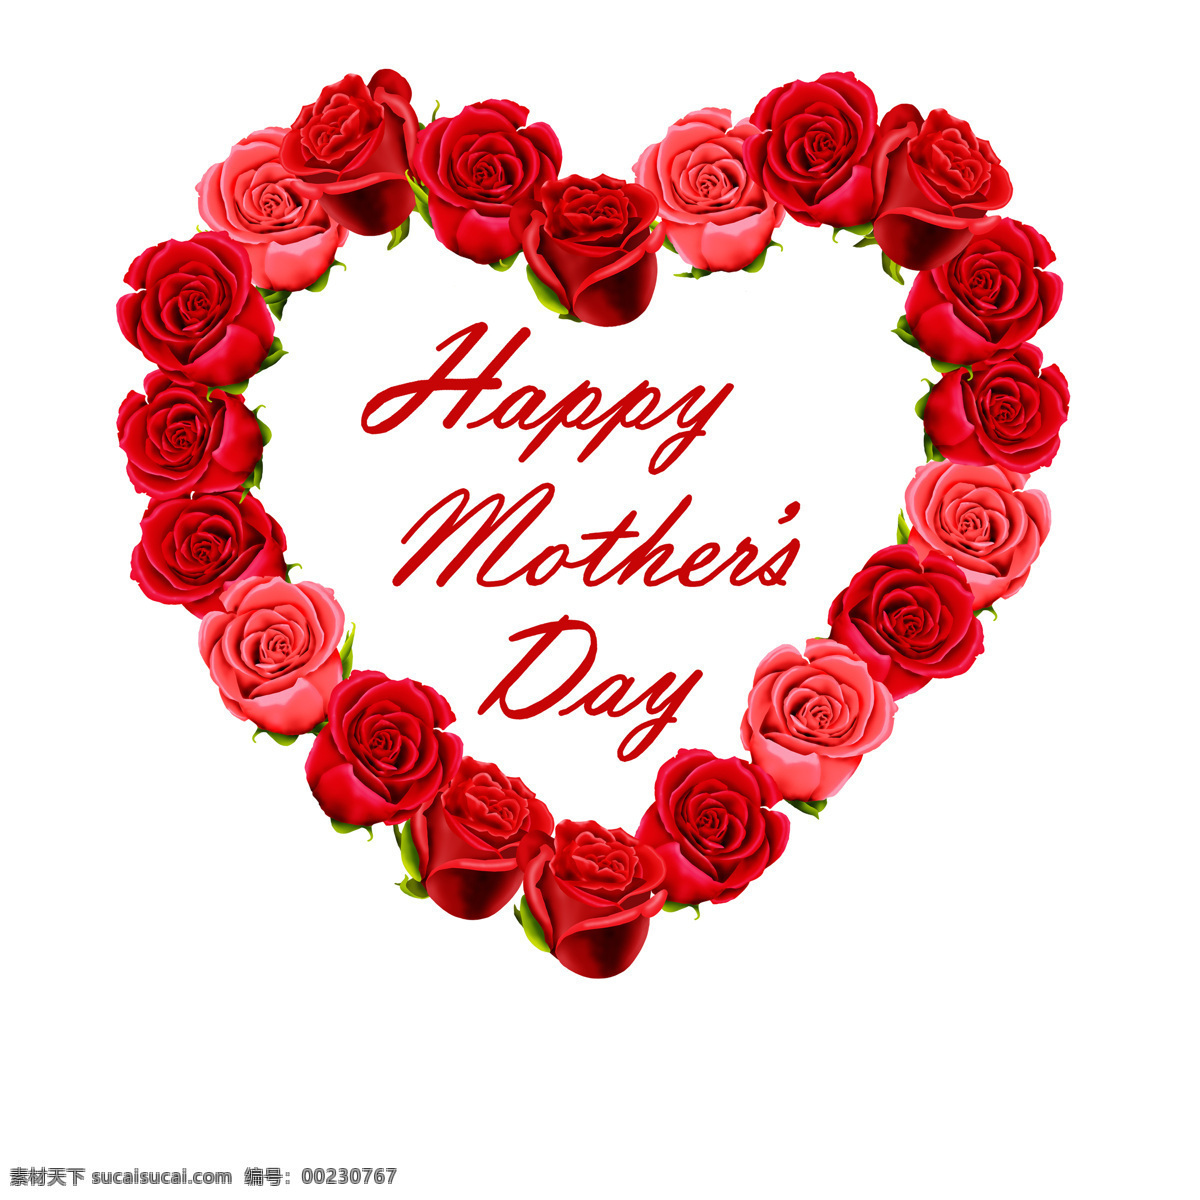 玫瑰花 组成 心形 母亲节 鲜花 花朵 红玫瑰 母亲节素材 节日庆典 生活百科